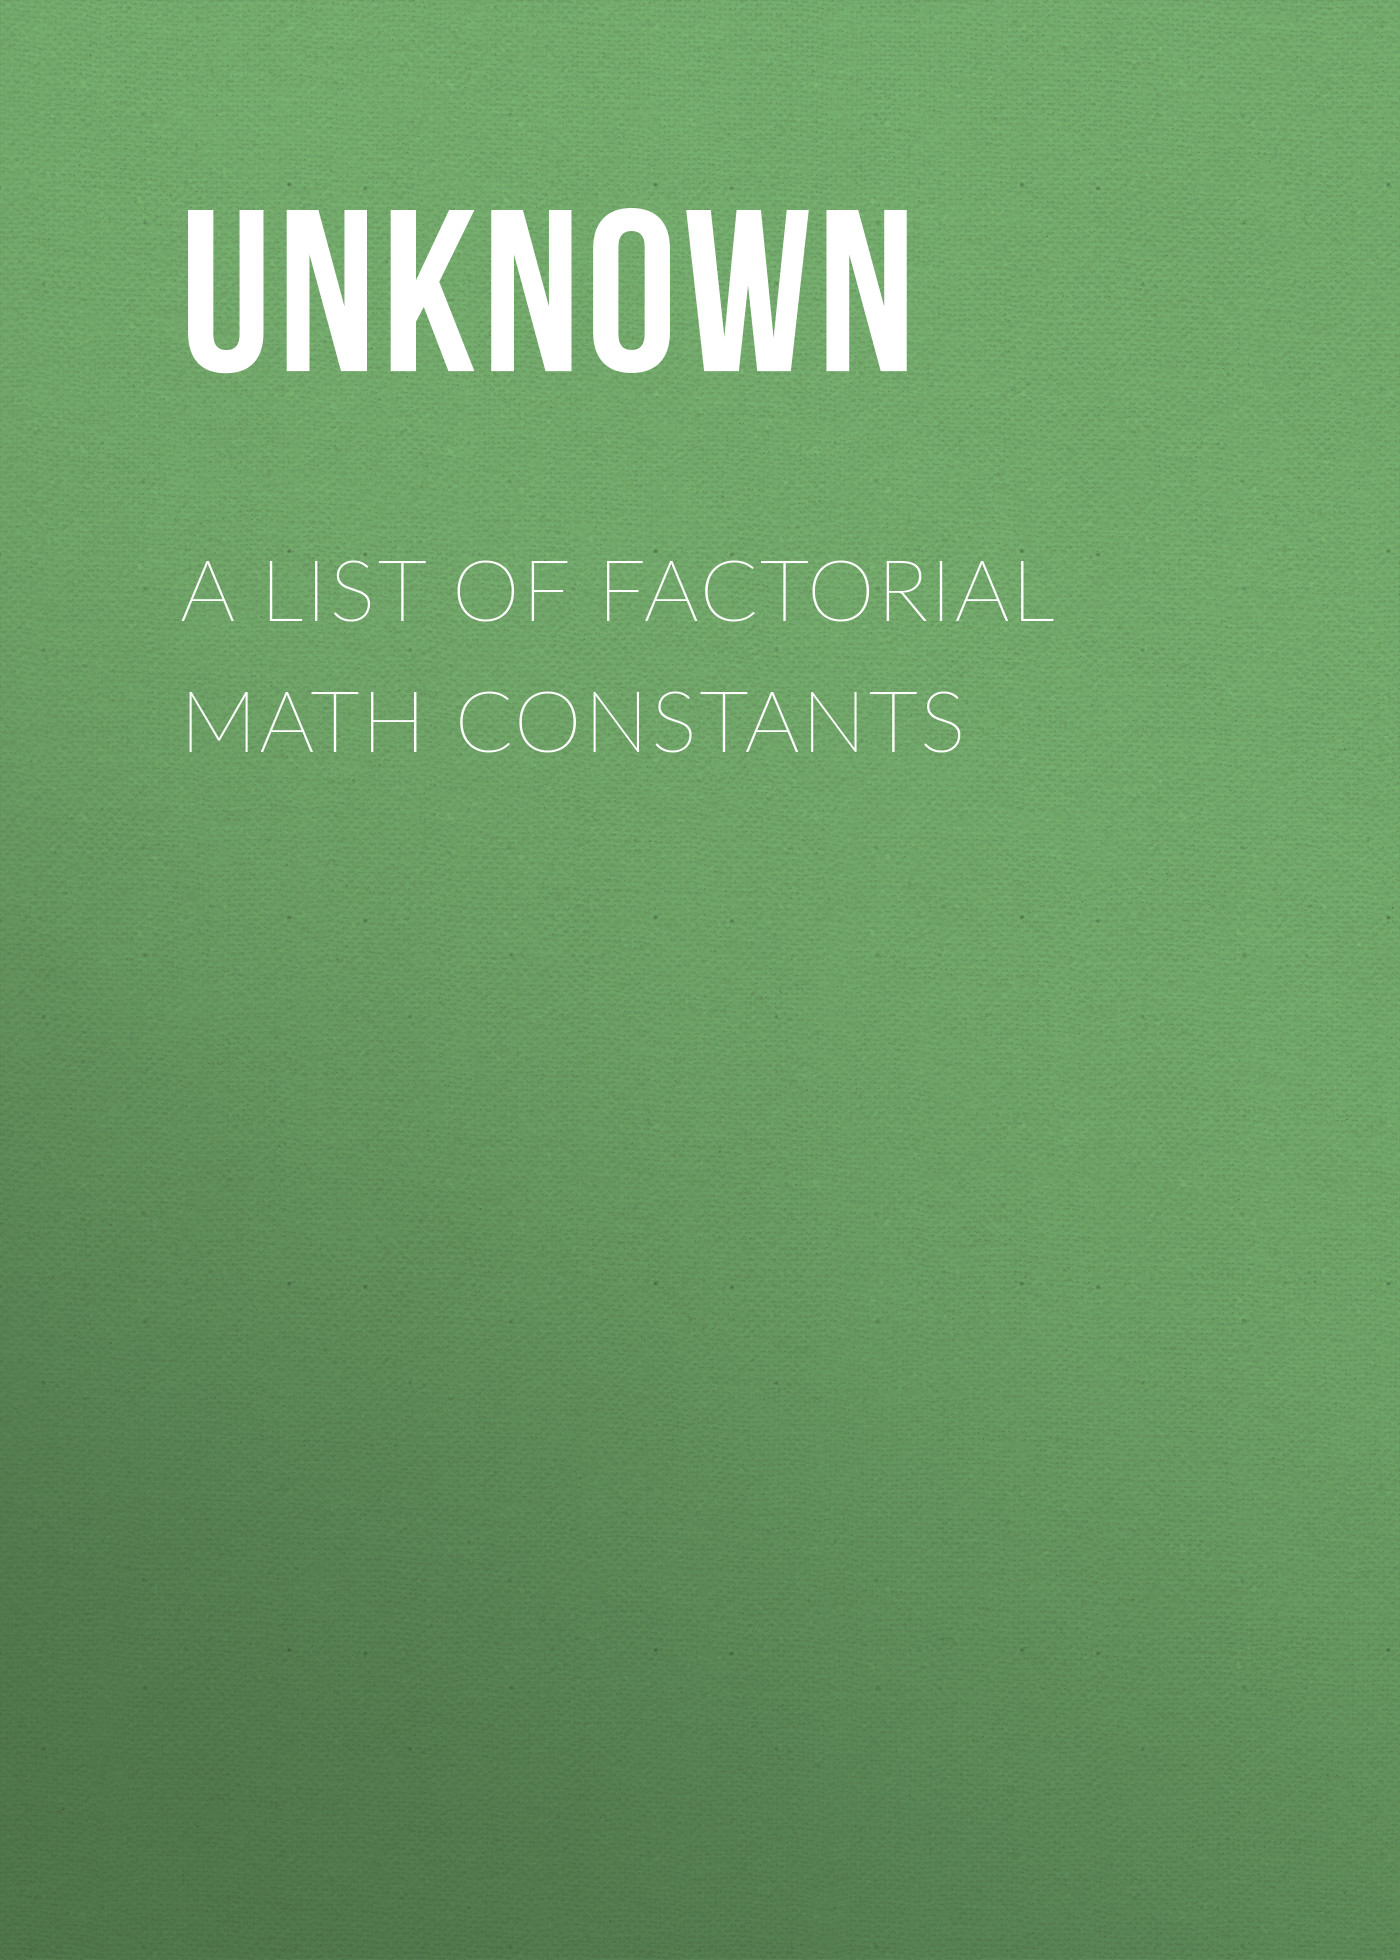 Книга A List of Factorial Math Constants из серии , созданная  Unknown, может относится к жанру Зарубежная классика, Зарубежная старинная литература. Стоимость электронной книги A List of Factorial Math Constants с идентификатором 35495655 составляет 0 руб.